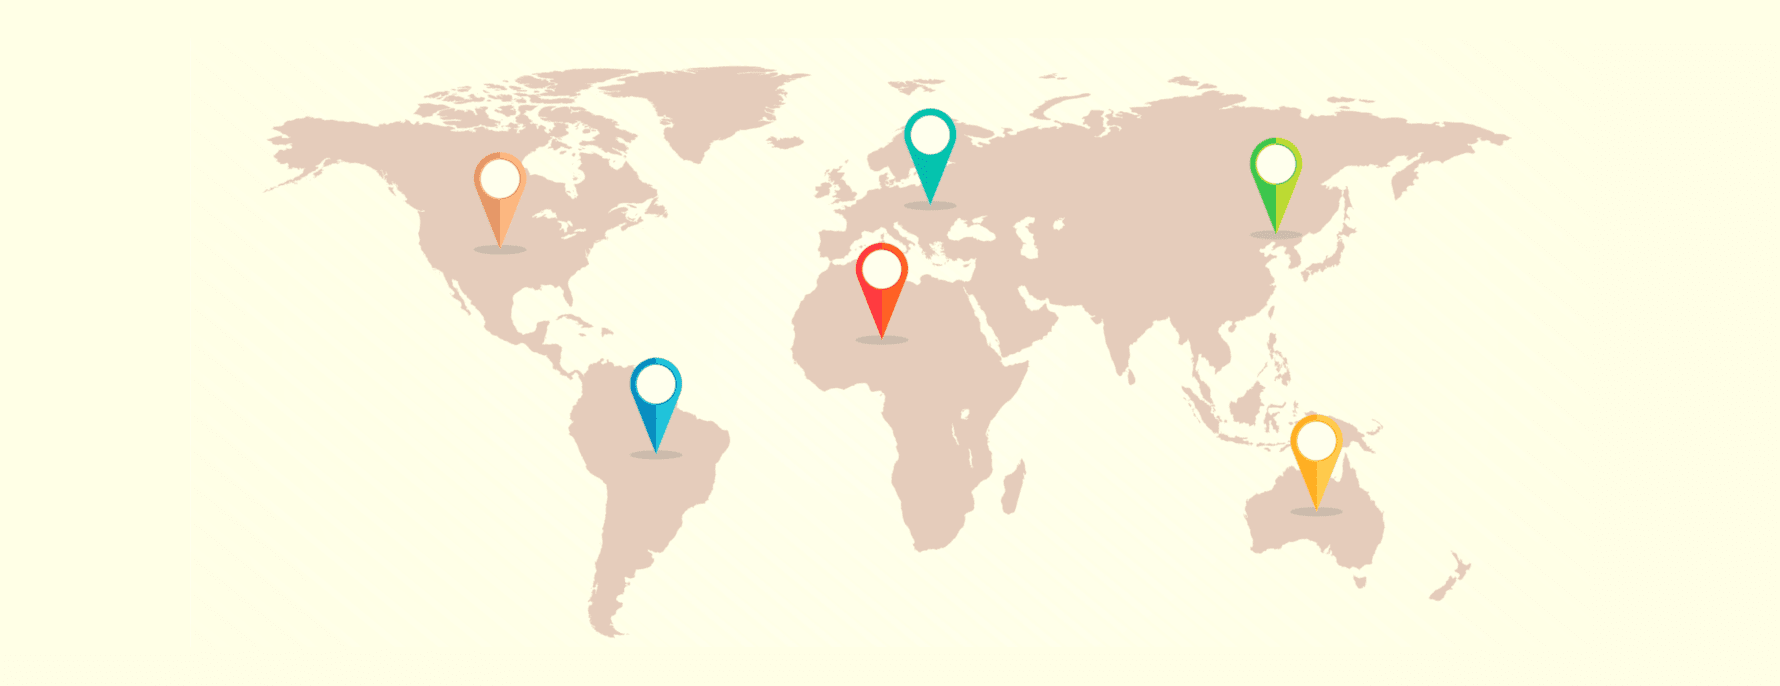 O hartă mondială care prezintă diferite jurisdicții VPN